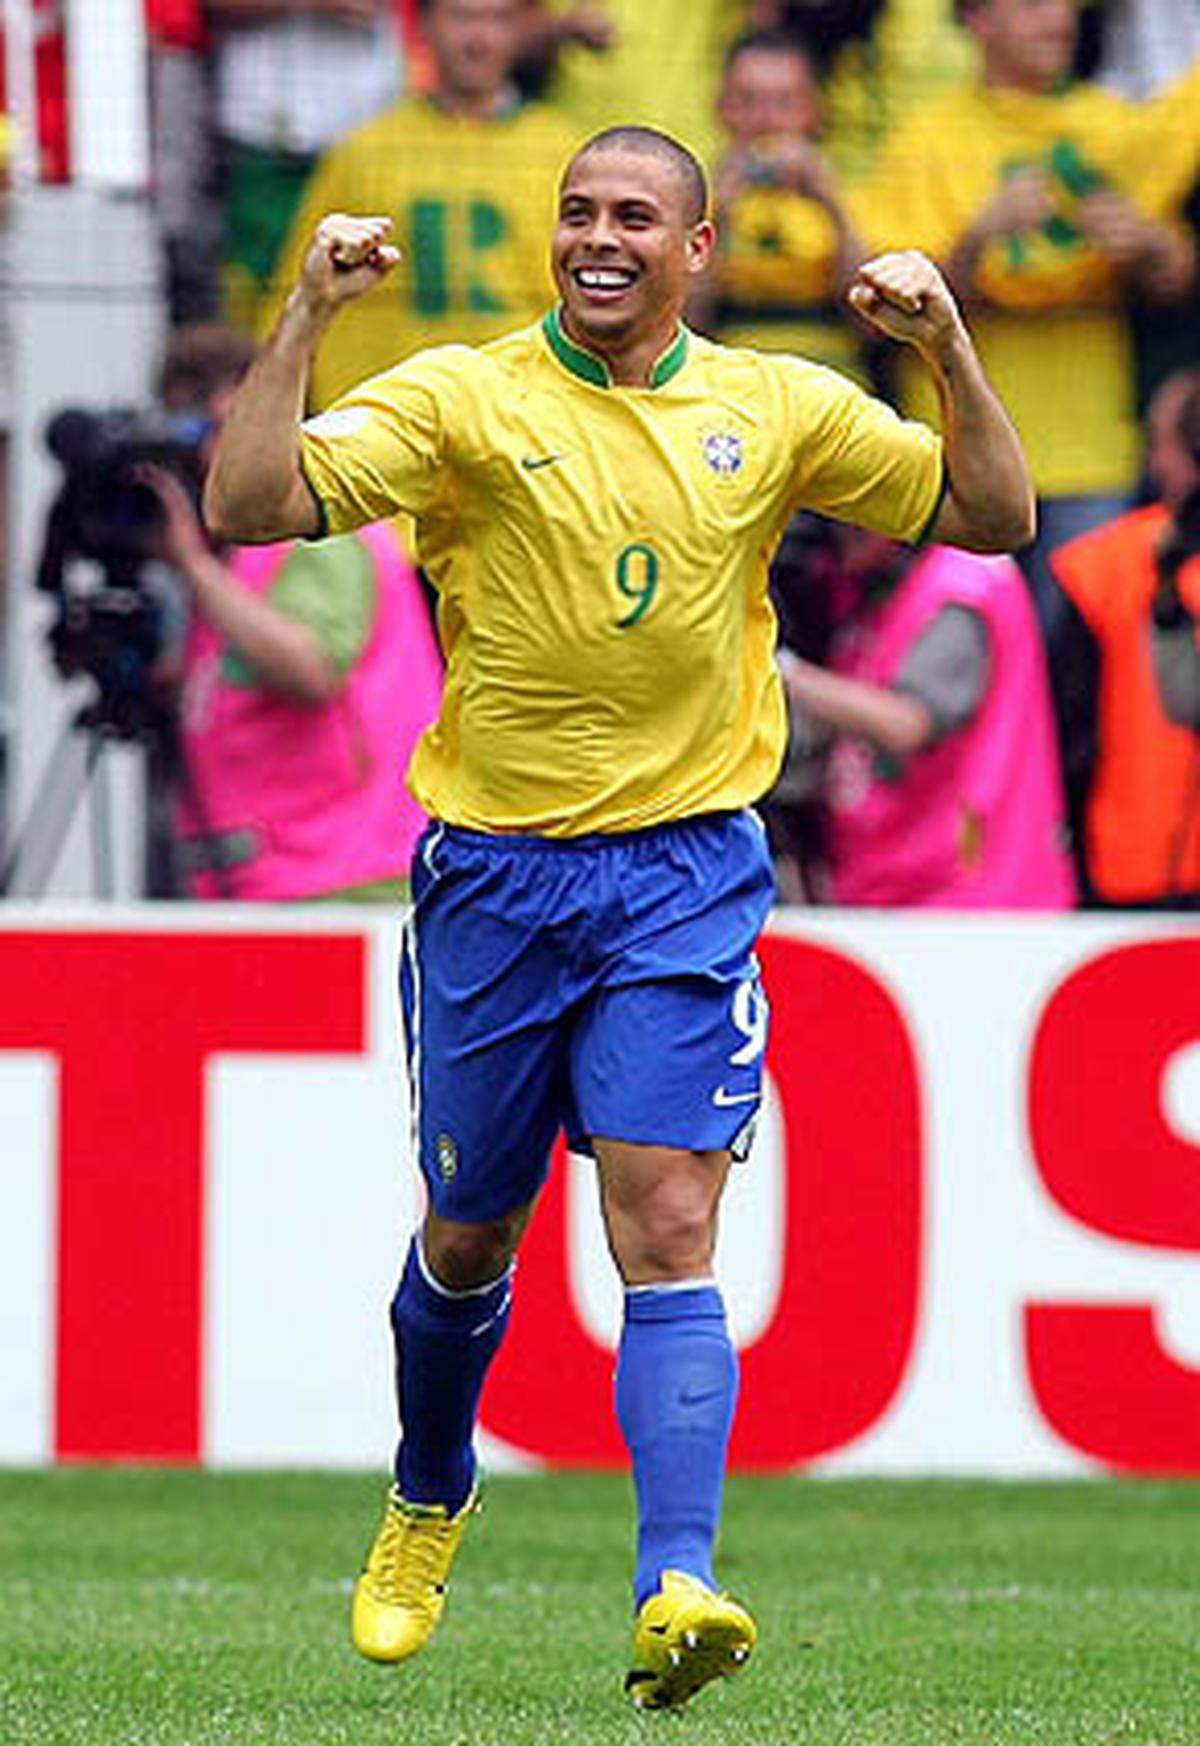 Auch die WM 2006 verläuft nicht nach Ronaldos Wunsch: Im Viertelfinale scheitert Brasilien an Frankreich, der Stürmer wird wegen mangelnder Fitness und Übergewicht scharf kritisiert. Ronaldo erhöht mit drei Treffern bei dieser WM sein Torkonto auf 15 und ist damit der erfolgreichste Torjäger der WM-Geschichte.